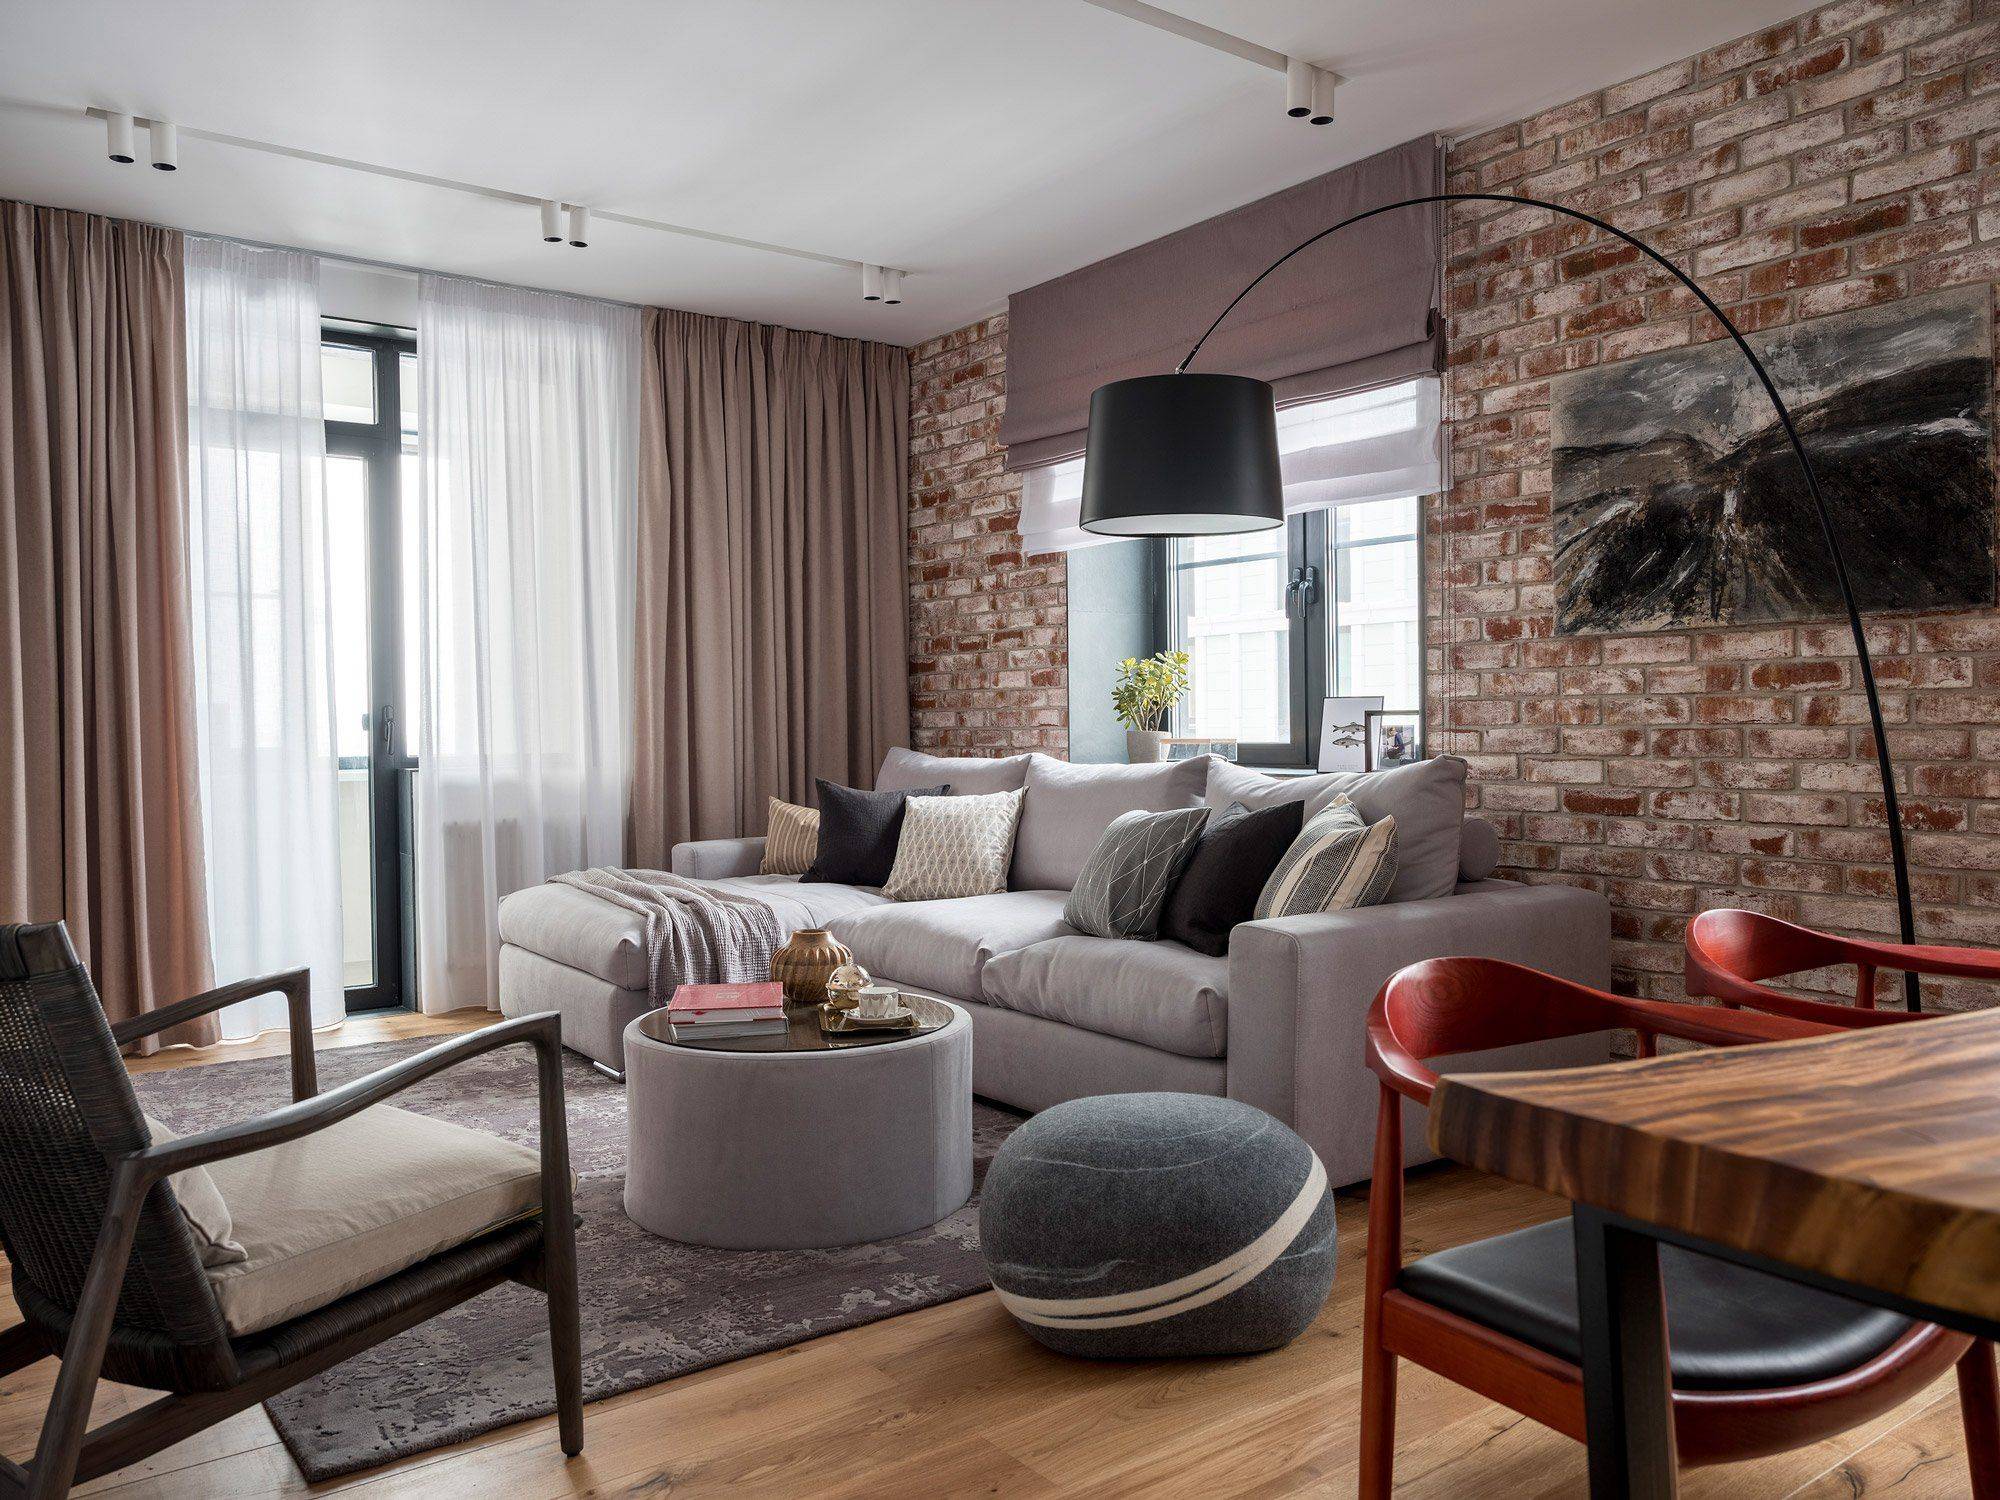 Два подхода: единый стиль для всей квартиры или разные идеи для каждого помещения?. уютный дом без особых затрат